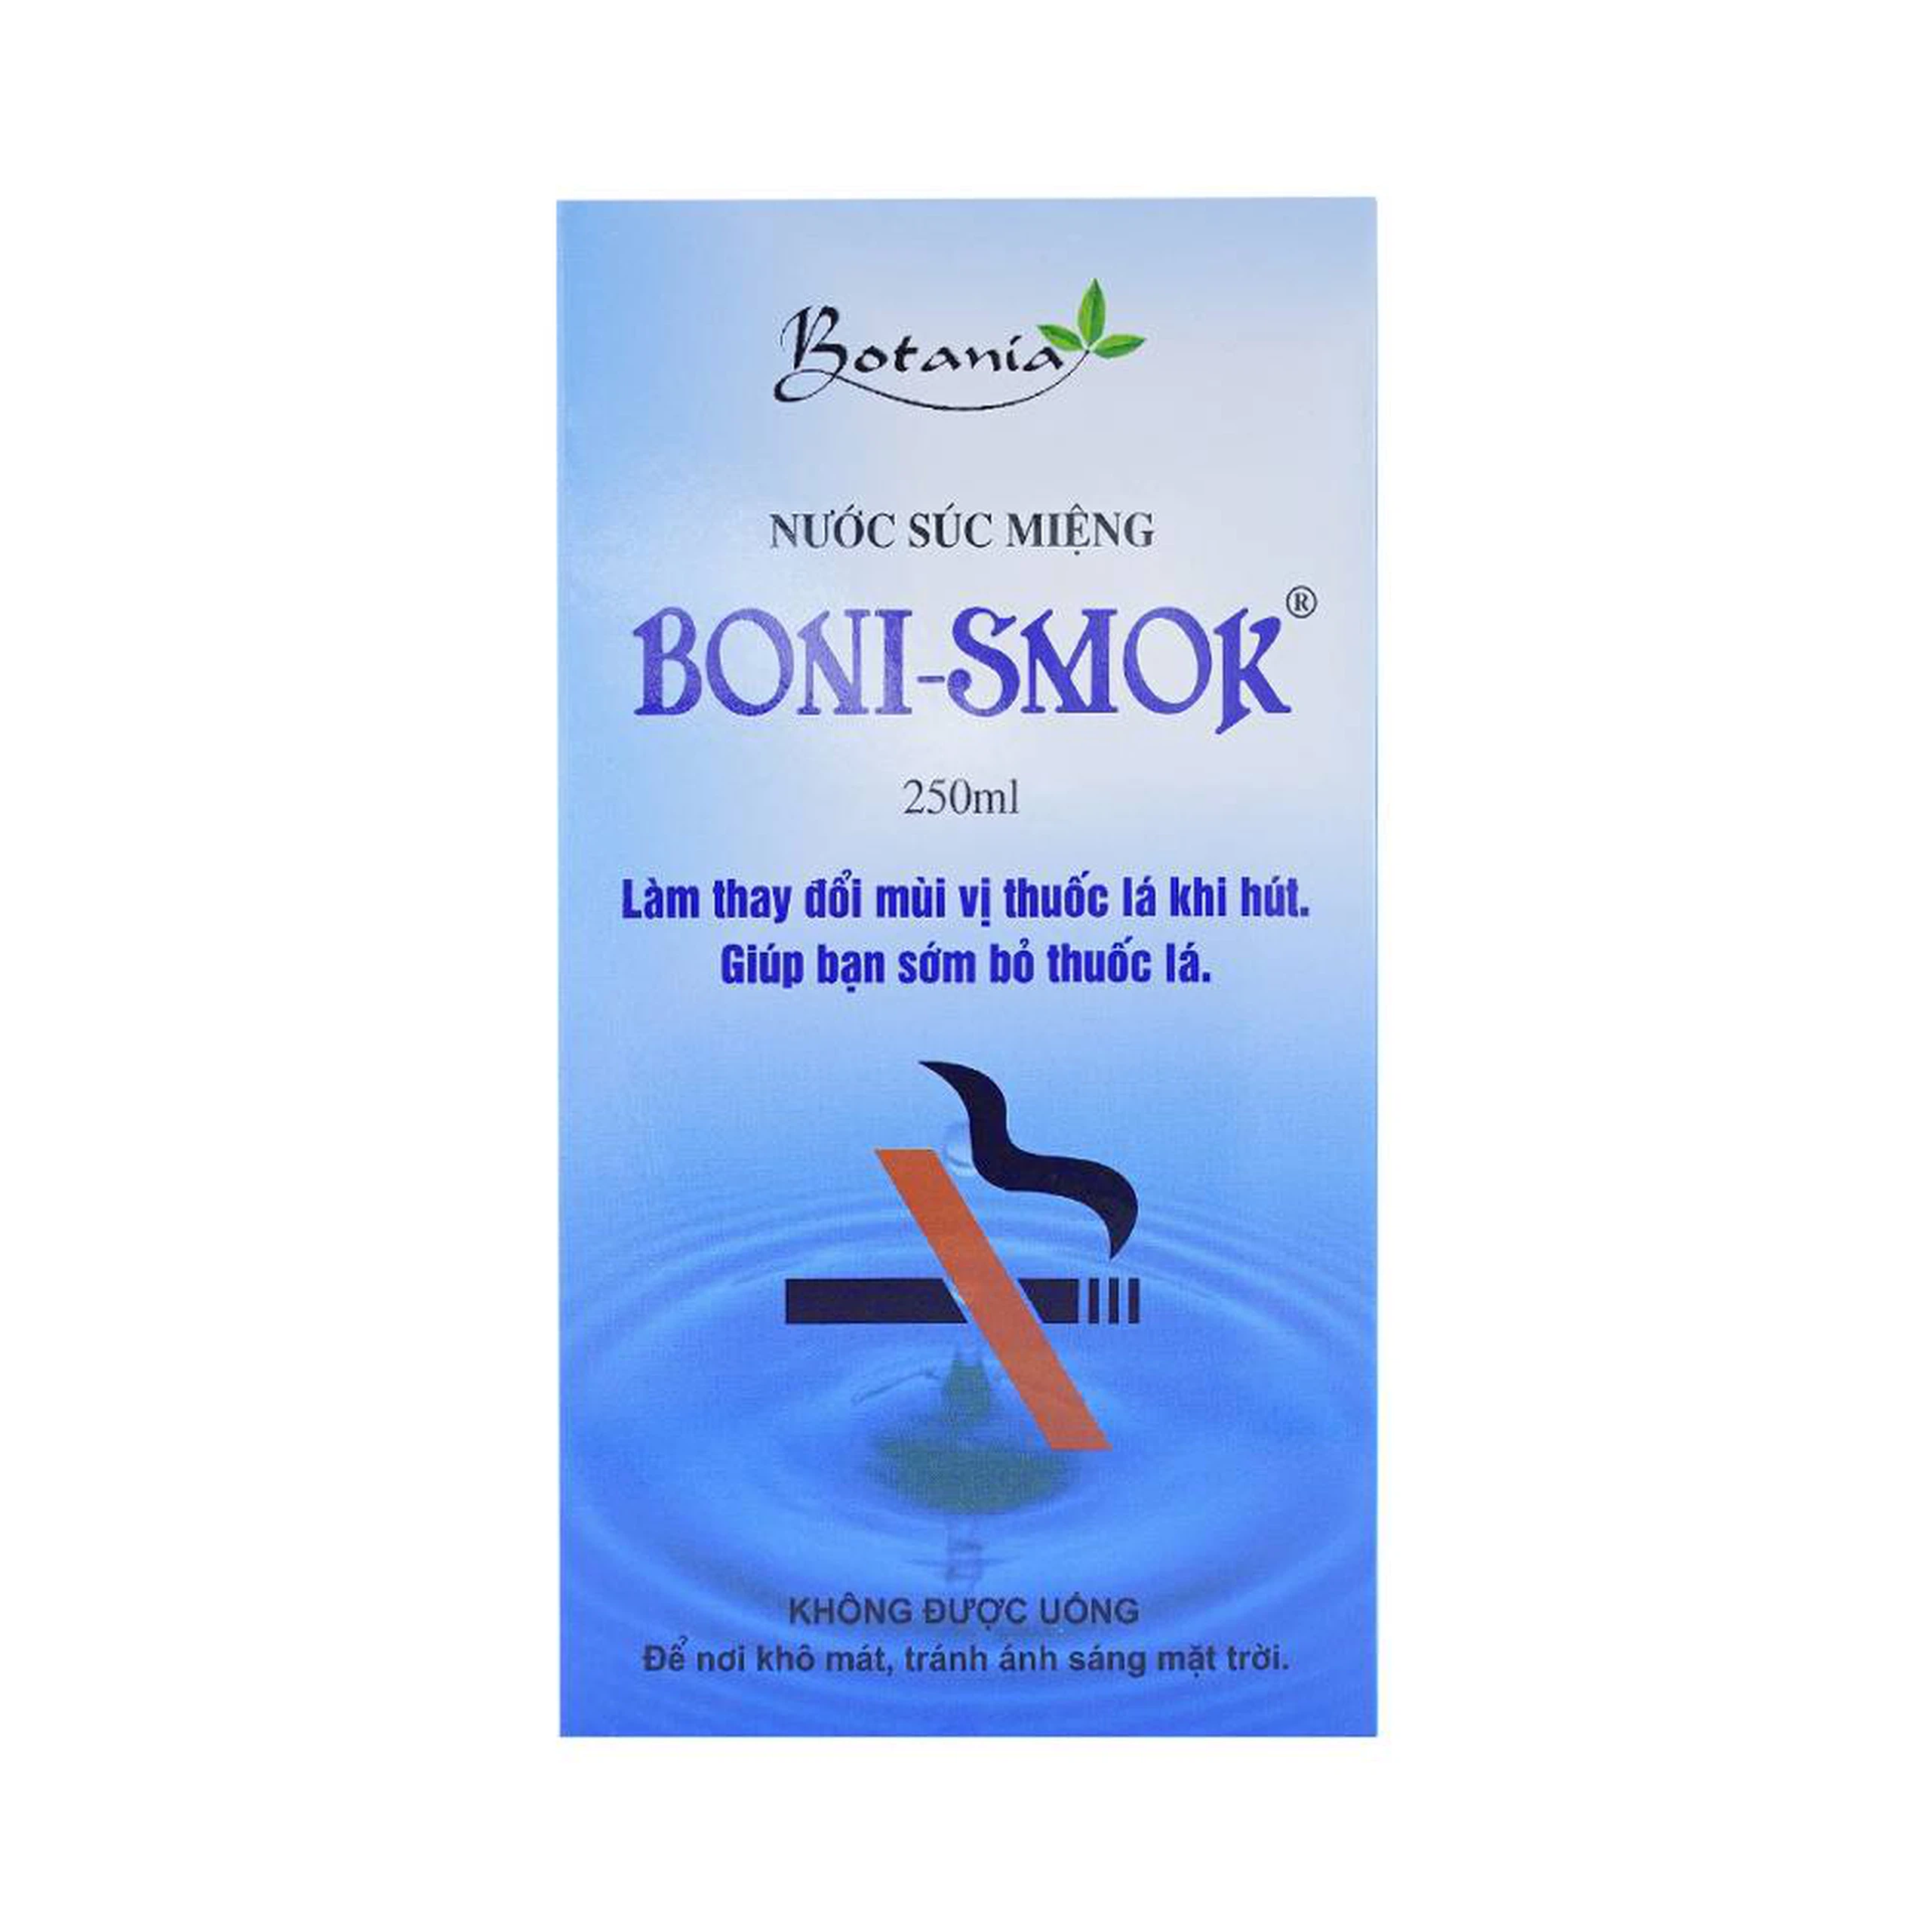 Nước súc miệng Boni-Smok làm thay đổi mùi vị thuốc lá khi hút, giúp bạn sớm bỏ thuốc lá (250ml)